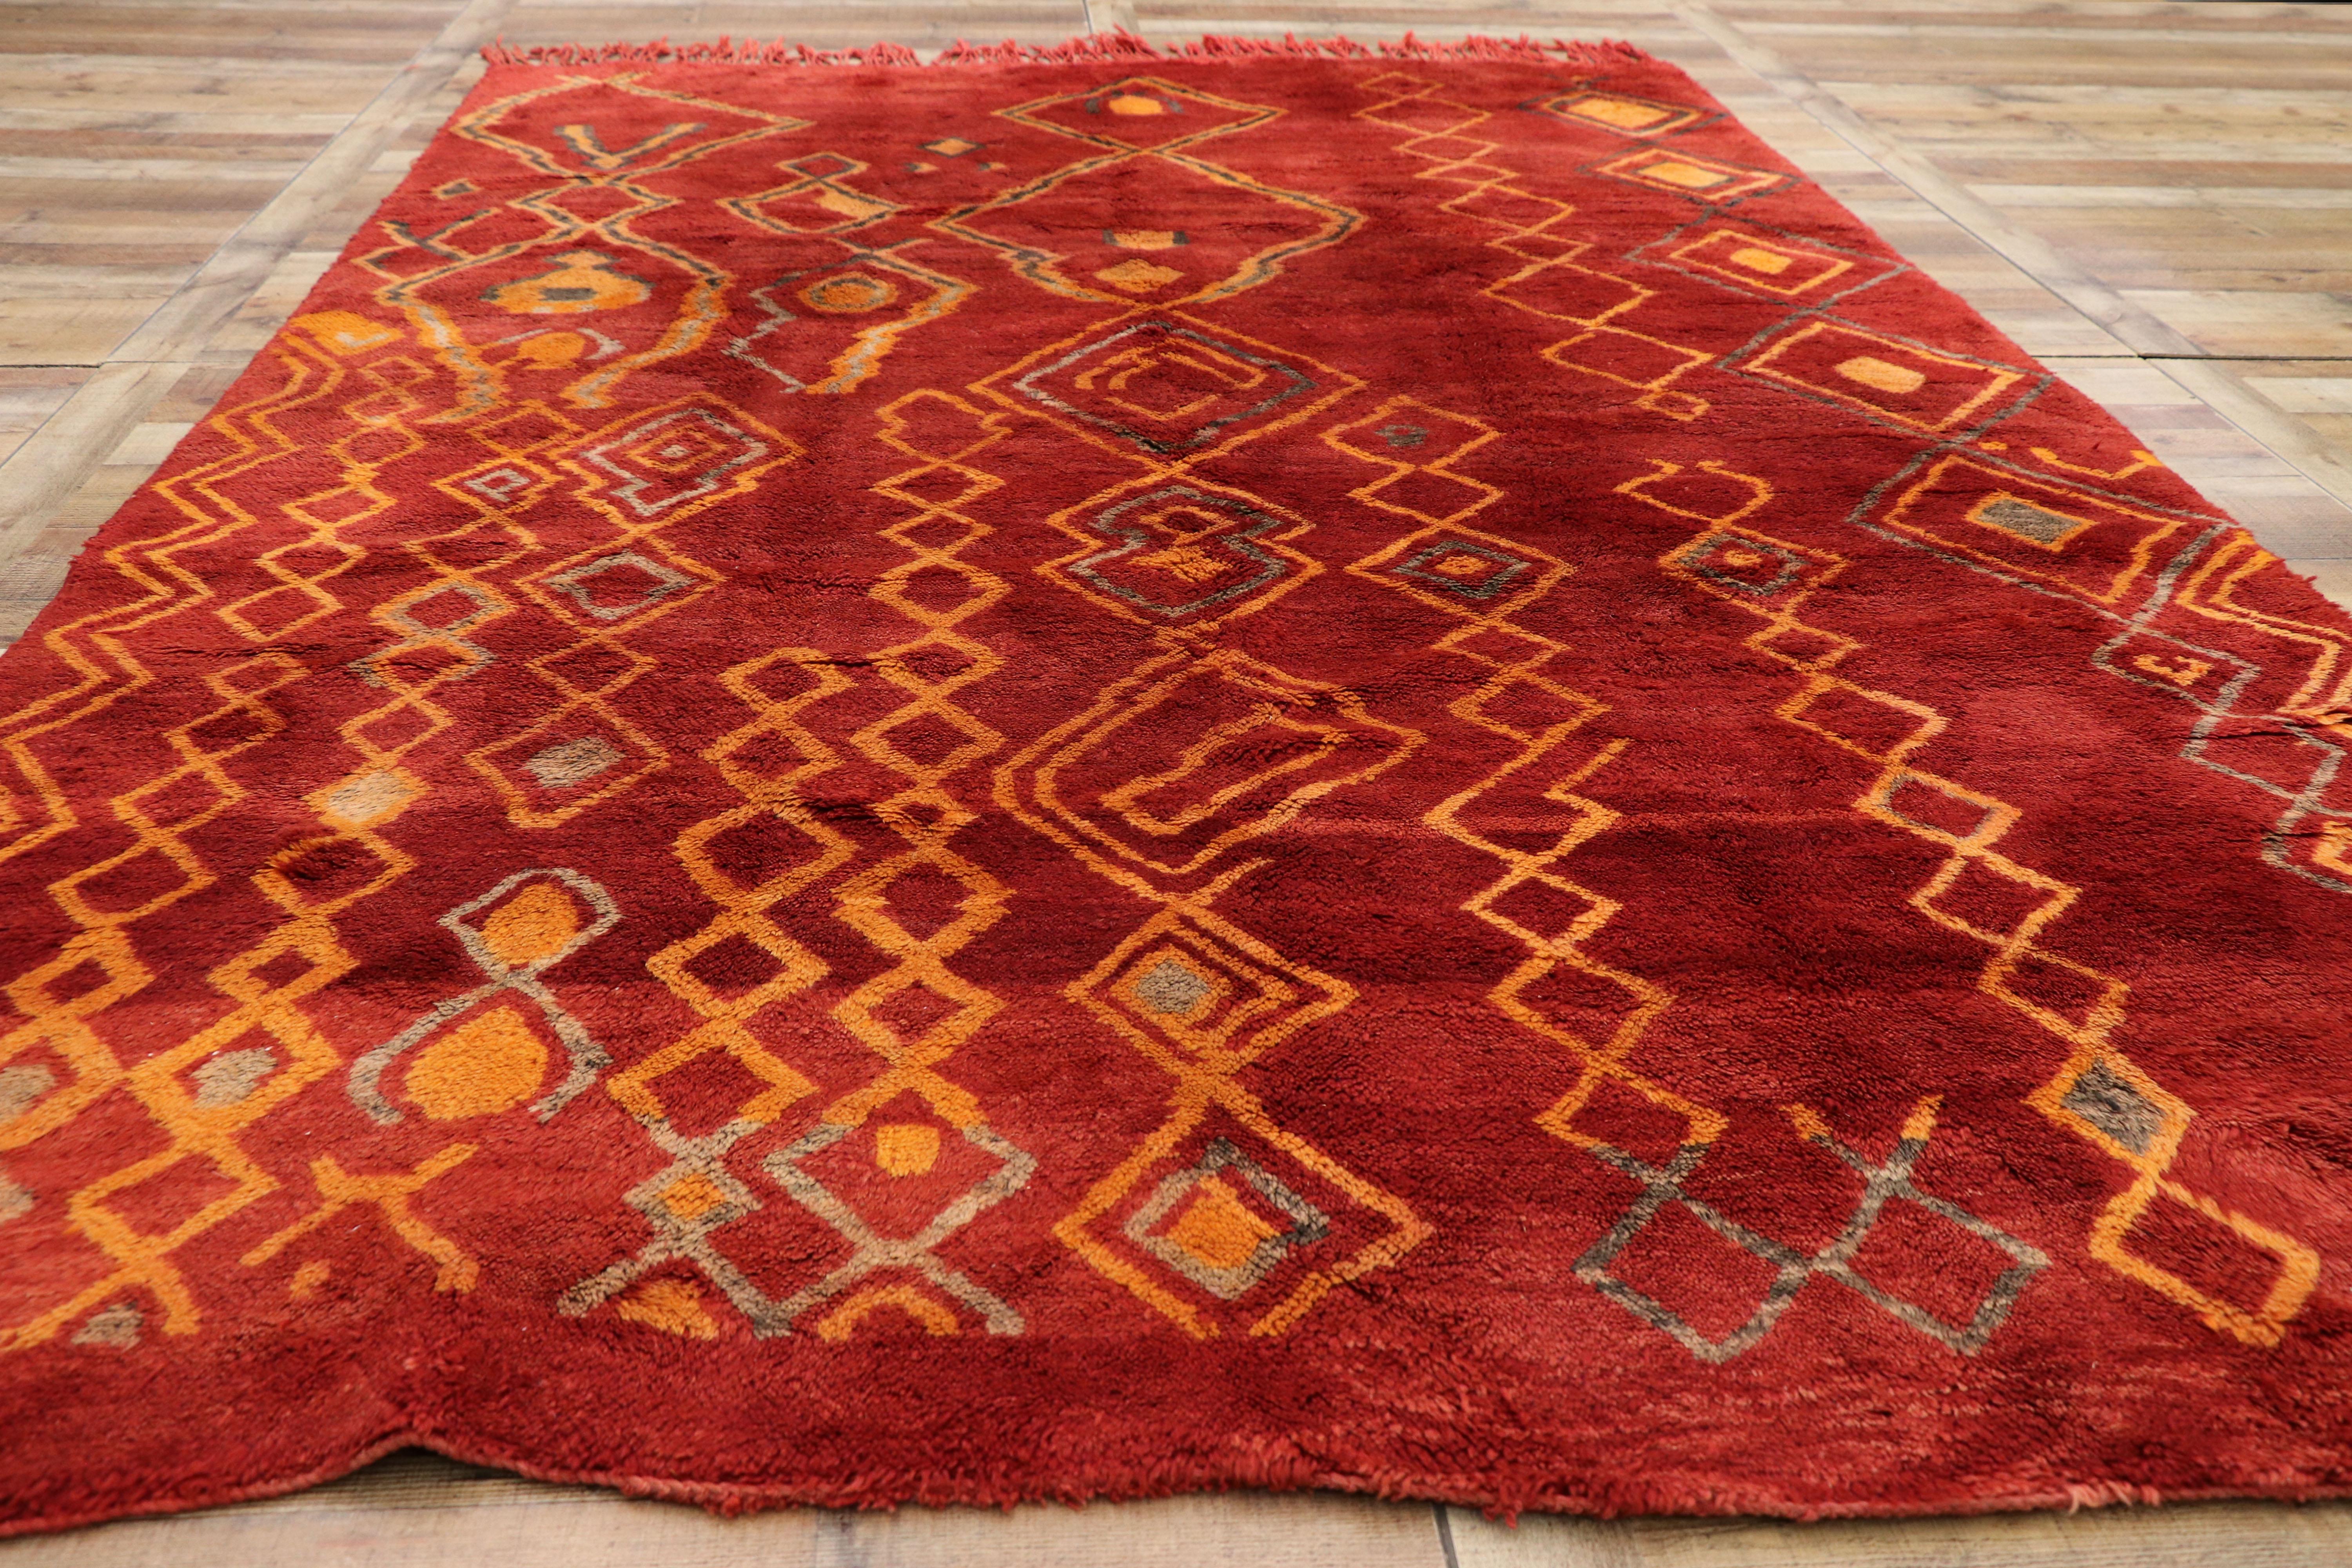 Hand-Knotted Vintage Red Beni Mrirt Carpet, Berber Moroccan Rug